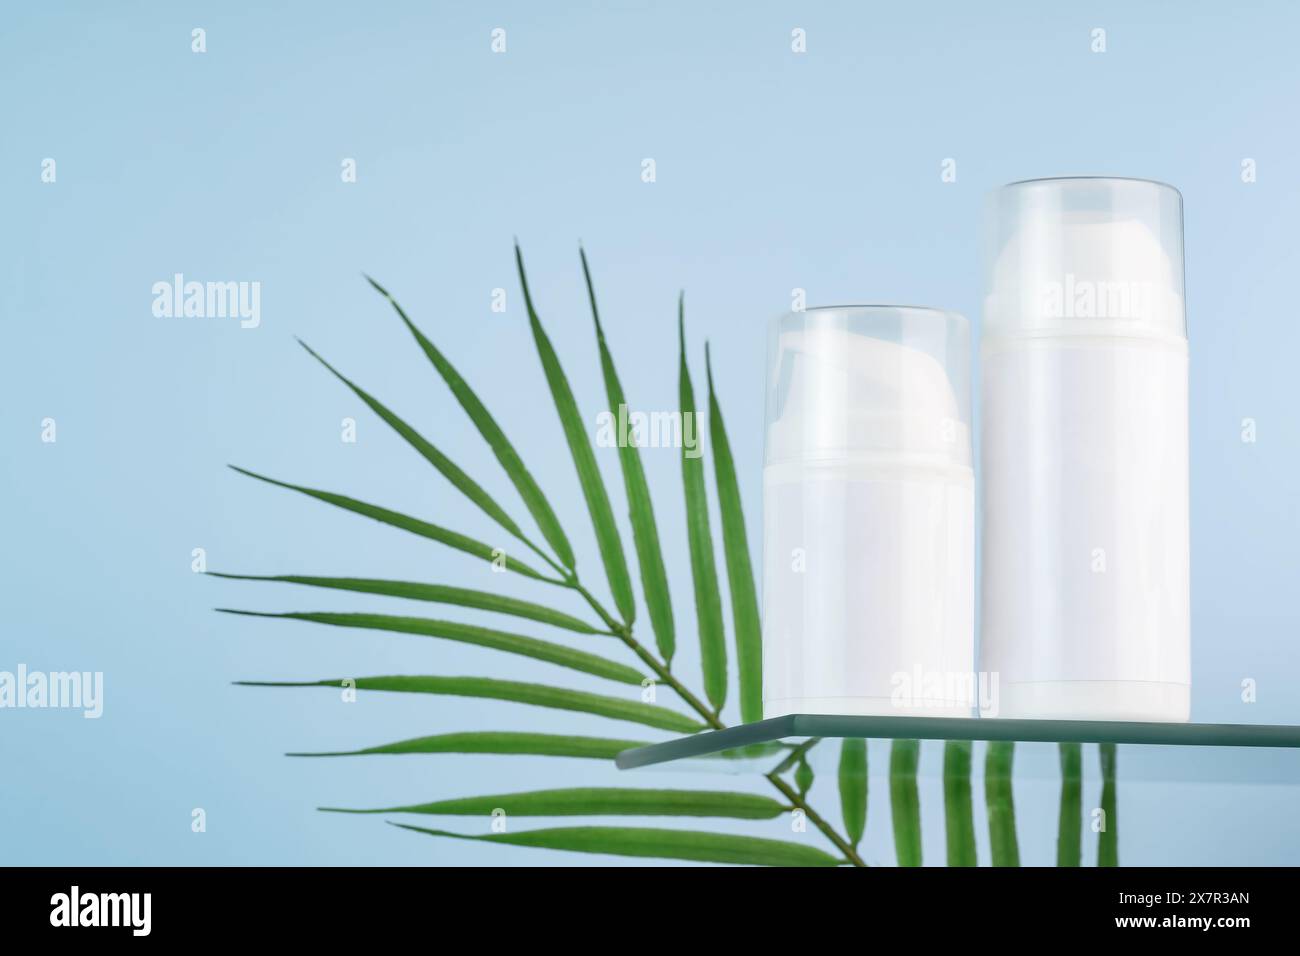 Tubi cosmetici bianchi vuoti, ideali per modelli di mockup, completati da una foglia verde tropicale su uno sfondo blu sereno. Foto Stock